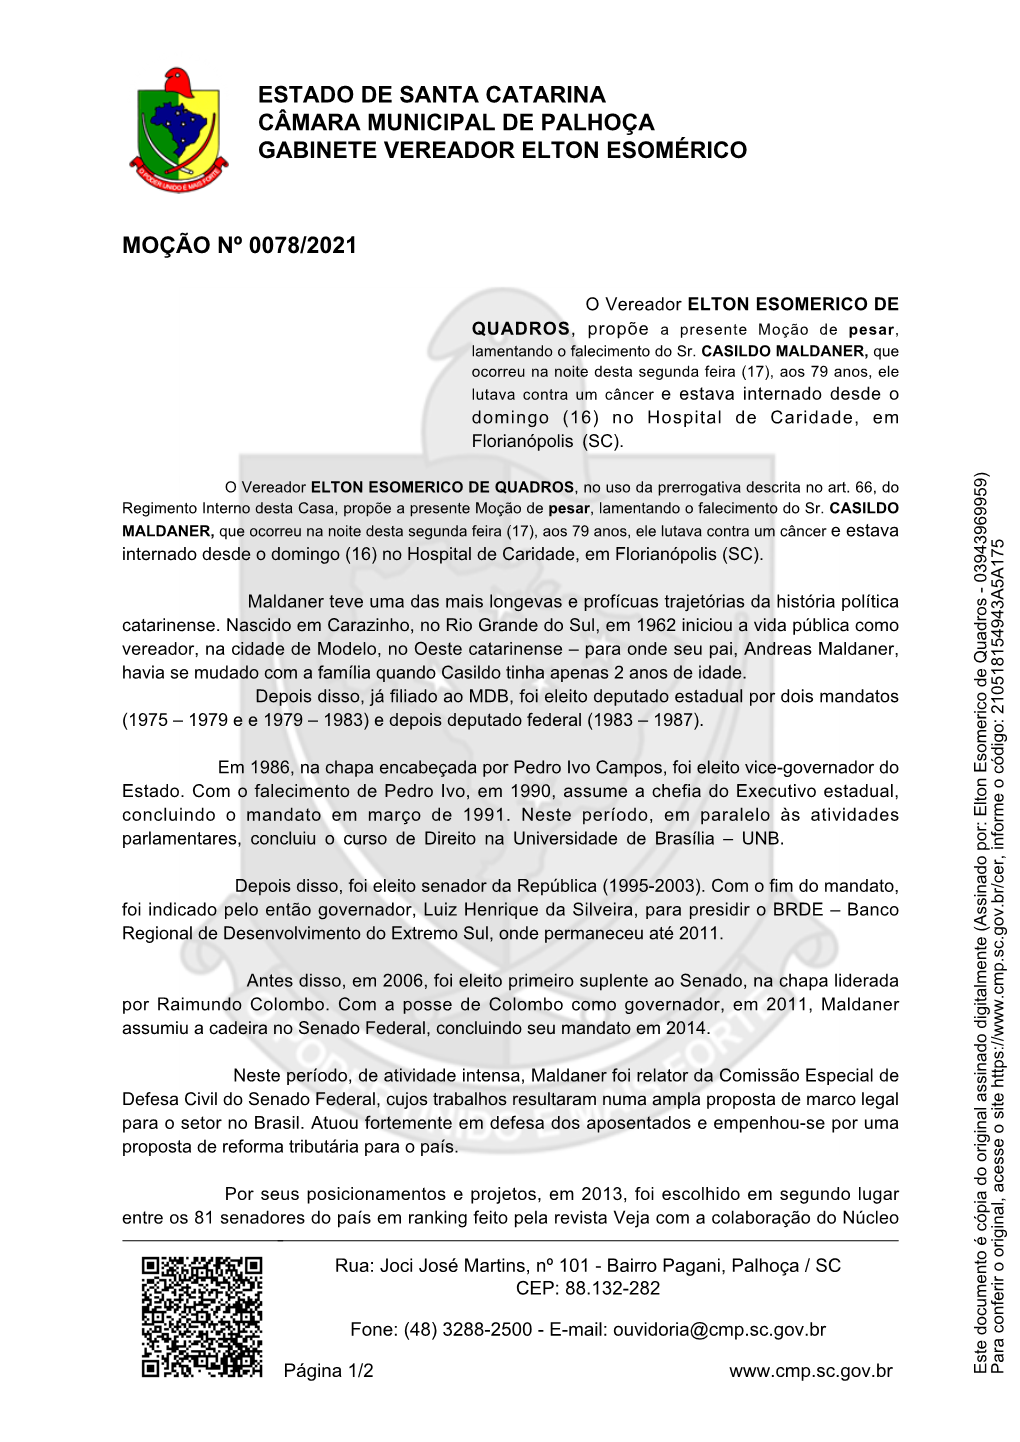 Documento Assinado Digitalmente Elton Esomérico De Quadros (PODE) Vereador